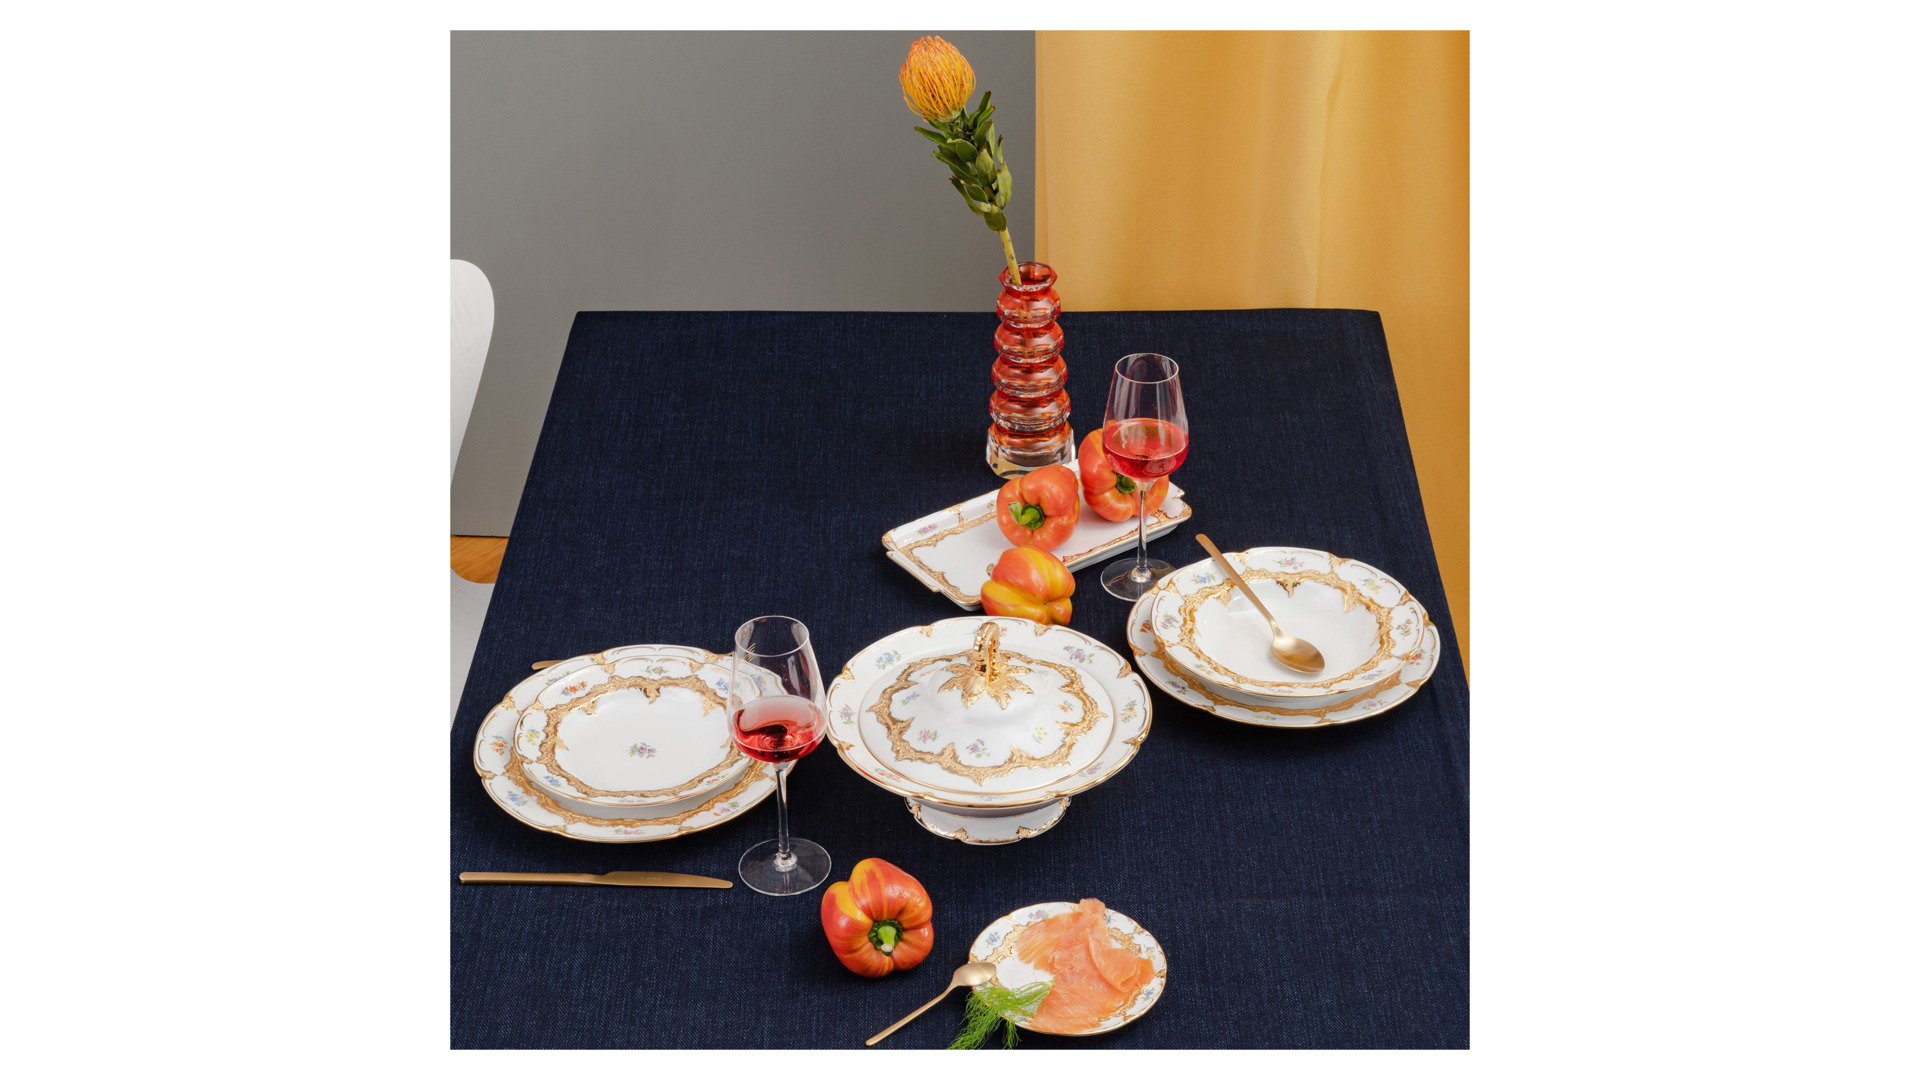 Набор тарелок суповых Meissen 24 см Форма - Б, россыпь цветов, 6 шт